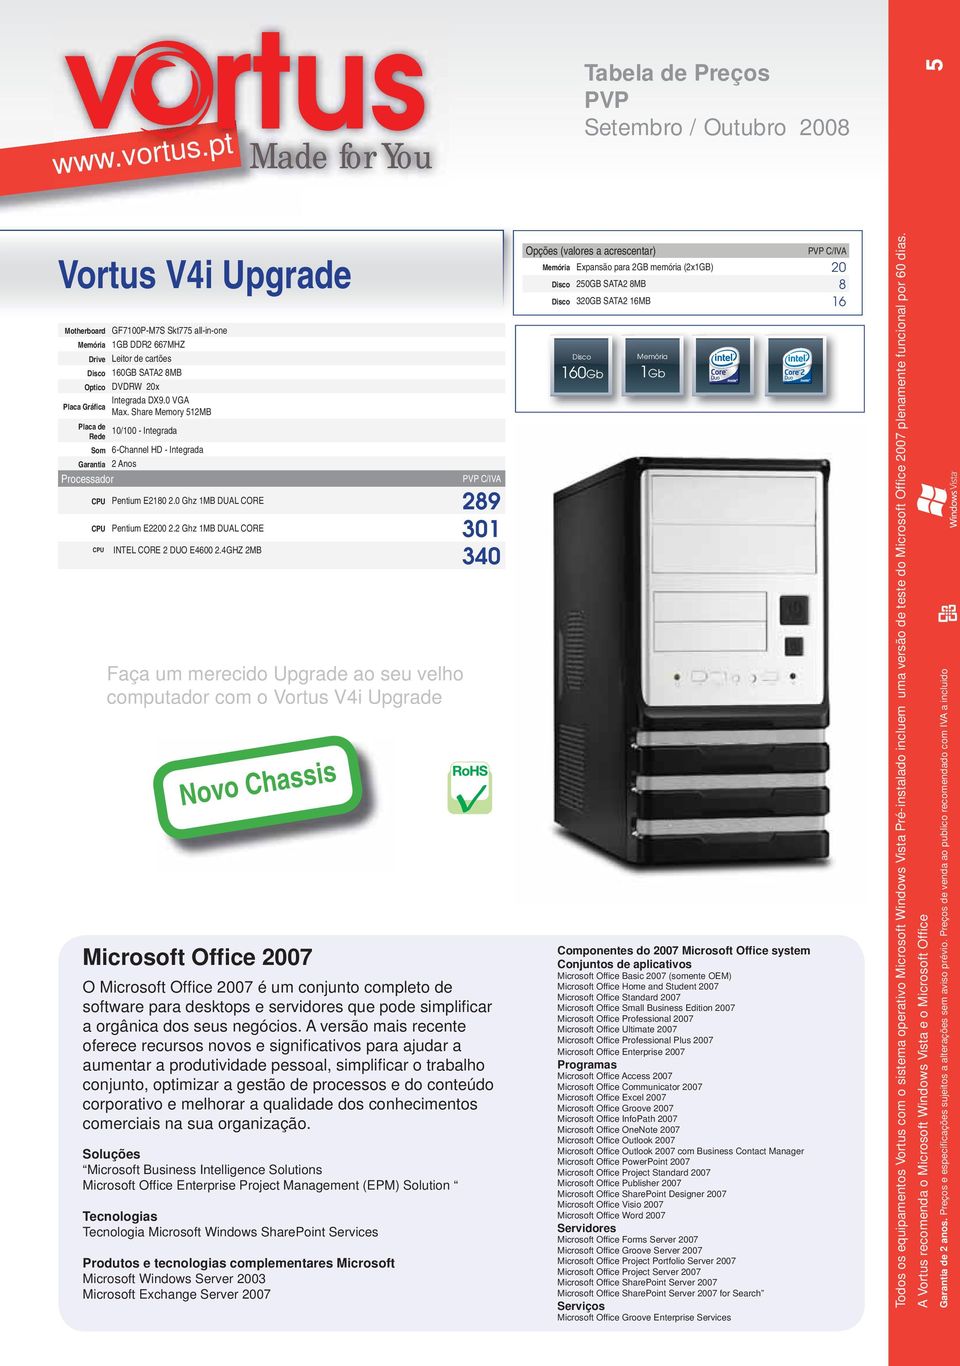 4GHZ 2MB 340 Faça um merecido Upgrade ao seu velho computador com o Vortus V4i Upgrade Novo Chassis Microsoft Office 2007 O Microsoft Offi ce 2007 é um conjunto completo de software para desktops e